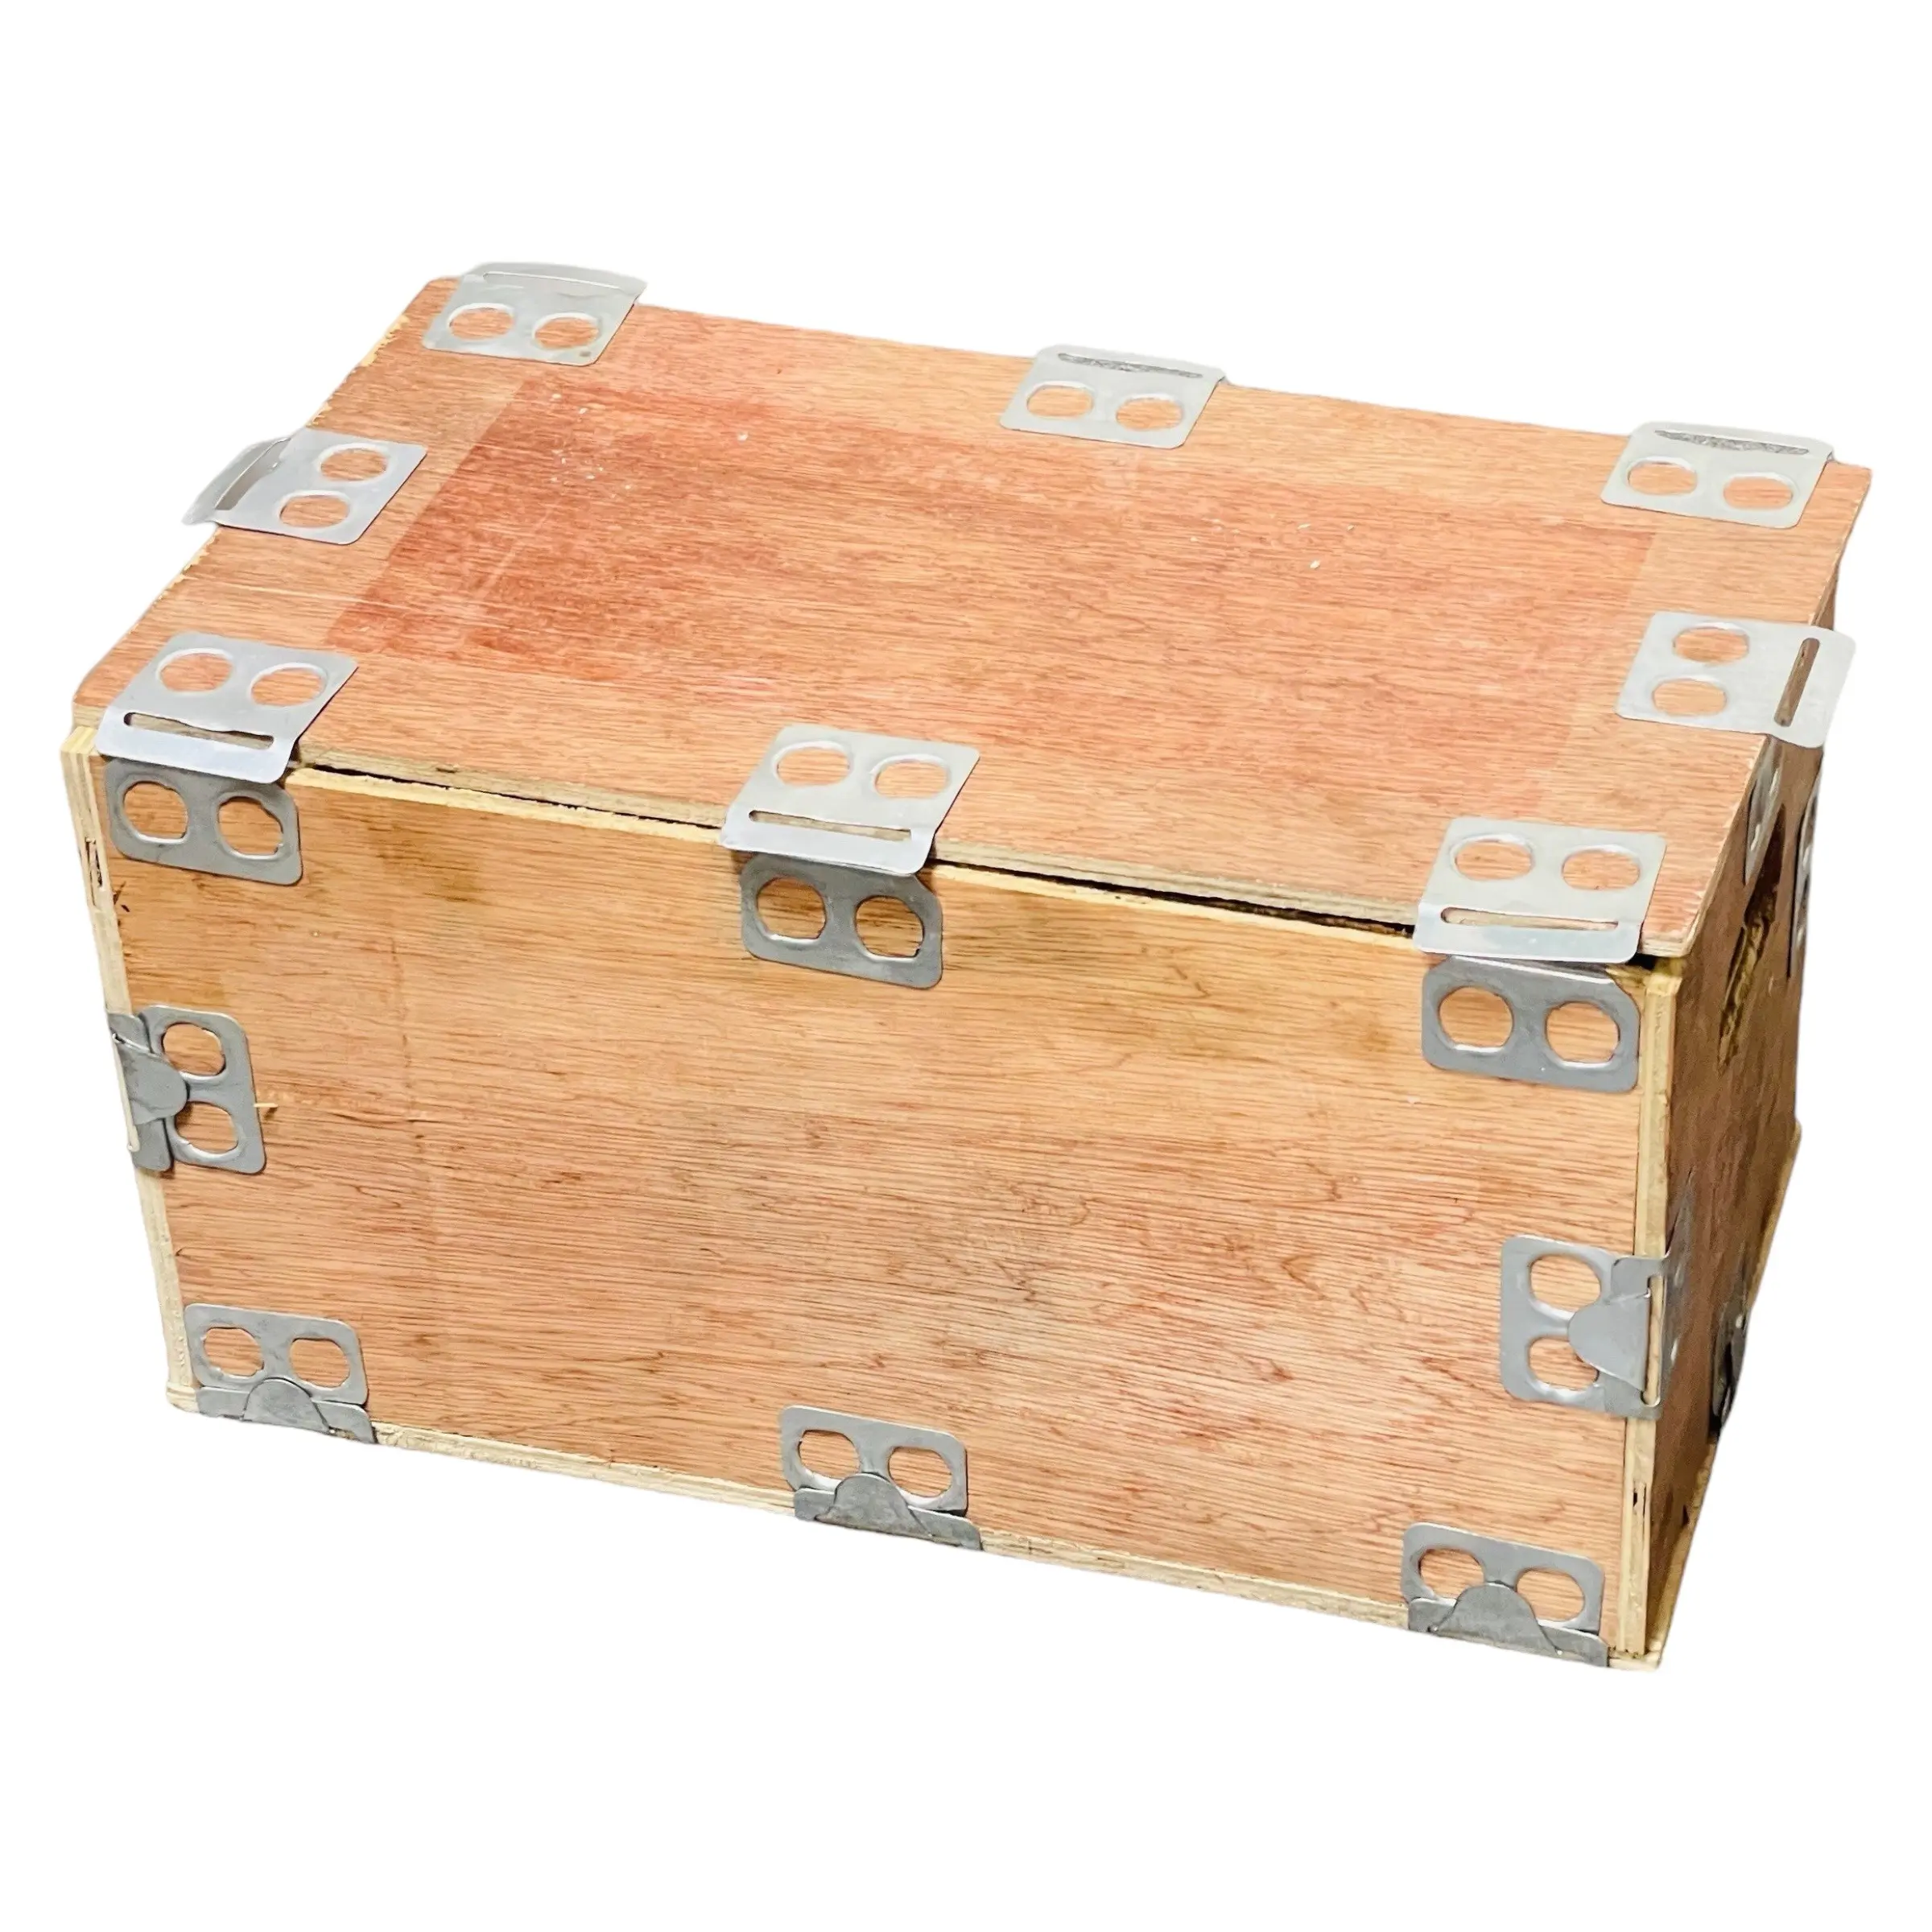 卸売クレートOem寸法木製クレート包装カスタムボックスボールト合板ベトナム製メーカー一括購入